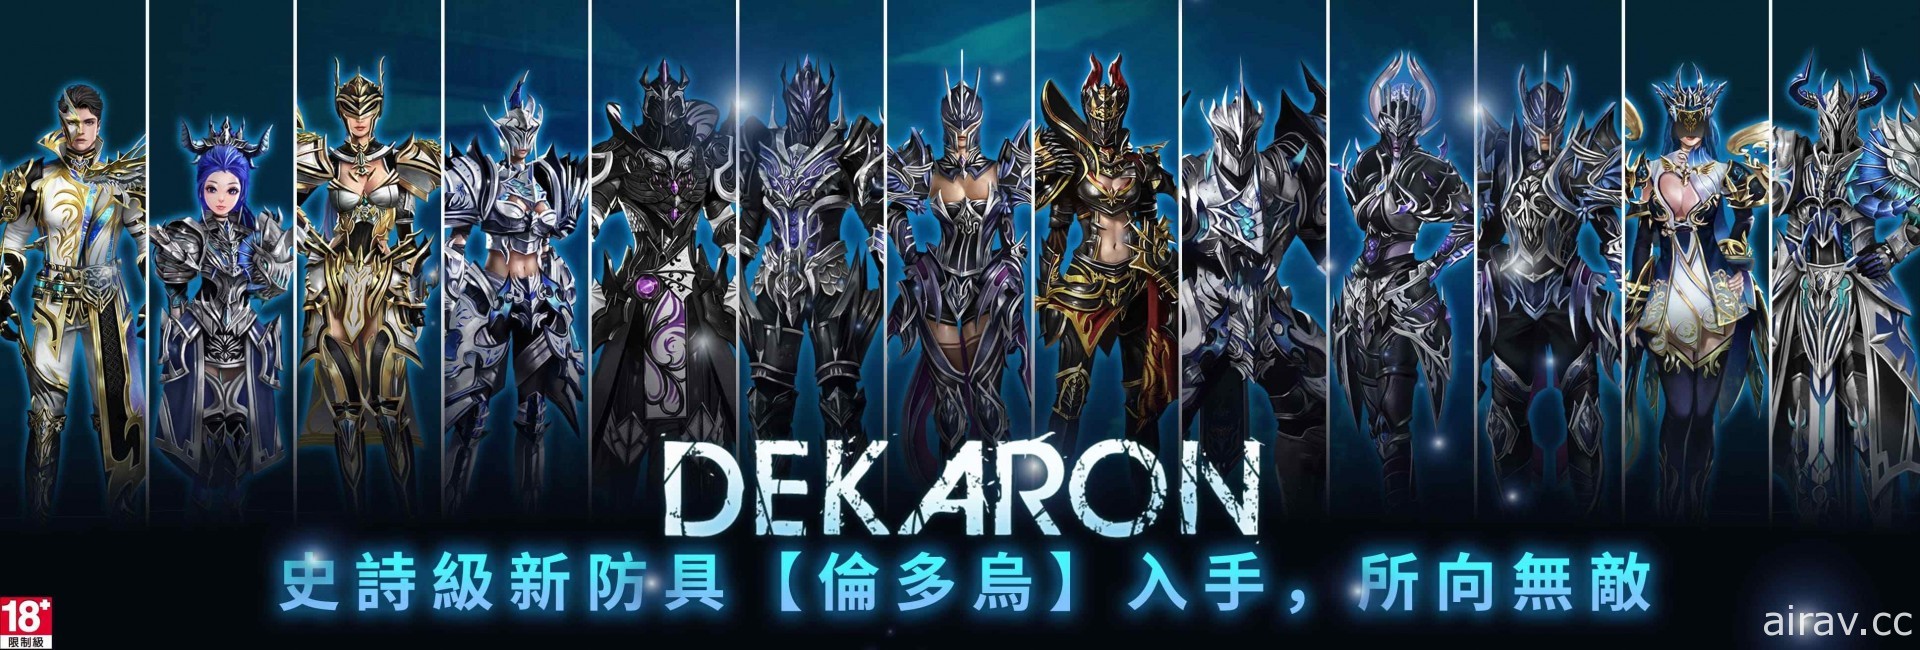 《Dekaron 獵魔出擊》1 月 16 日登場 今日開放下載程式